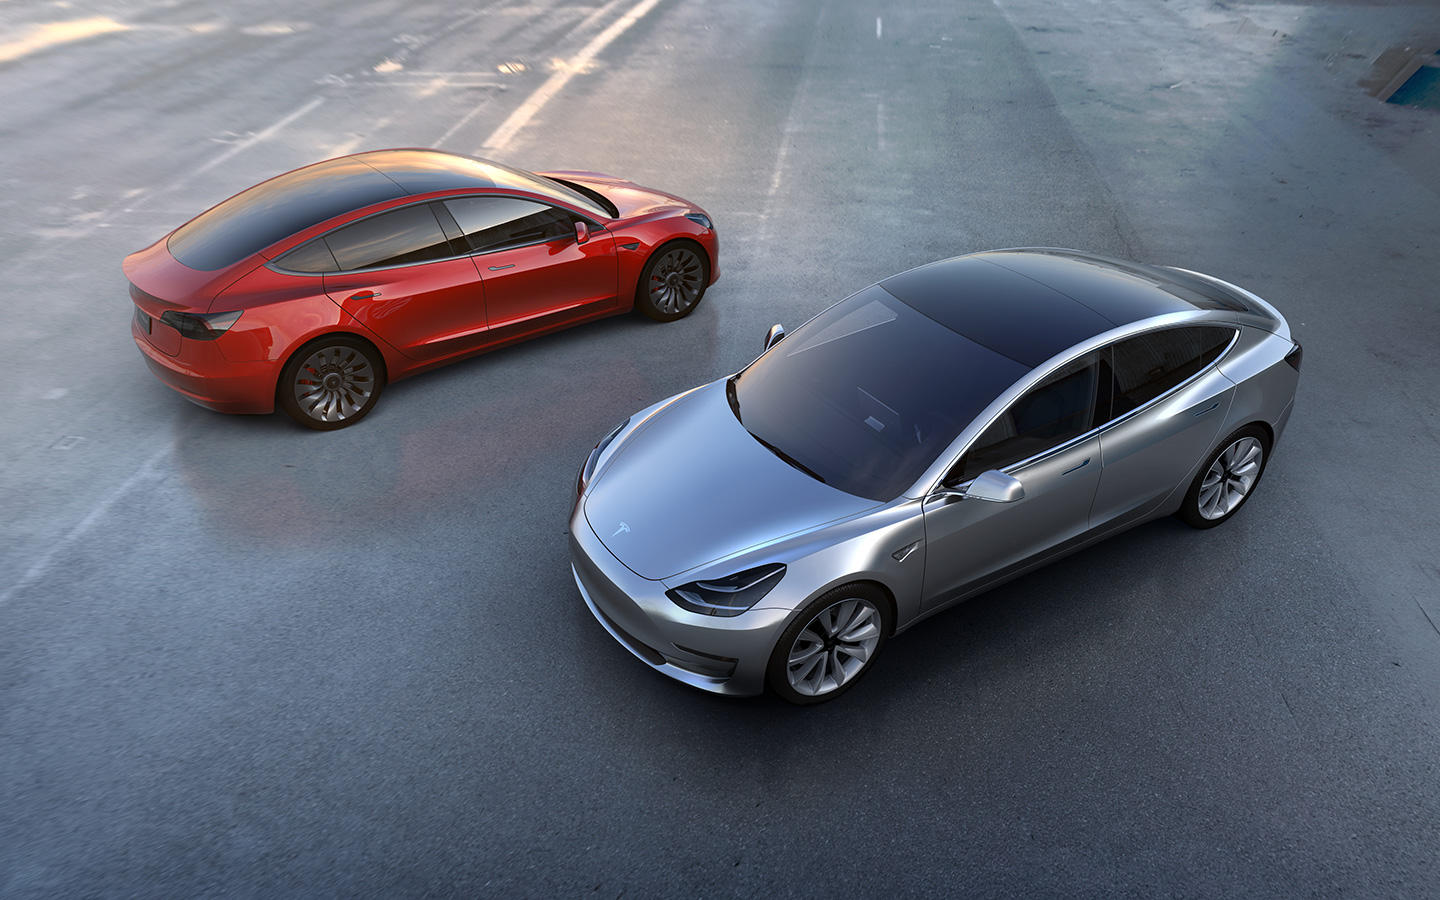 El Nuevo Tesla Model 3 De $35,000 Supera Todas Las Expectativas: Se Registraron 200,000 Pedidos En Las Primeras 24 Horas